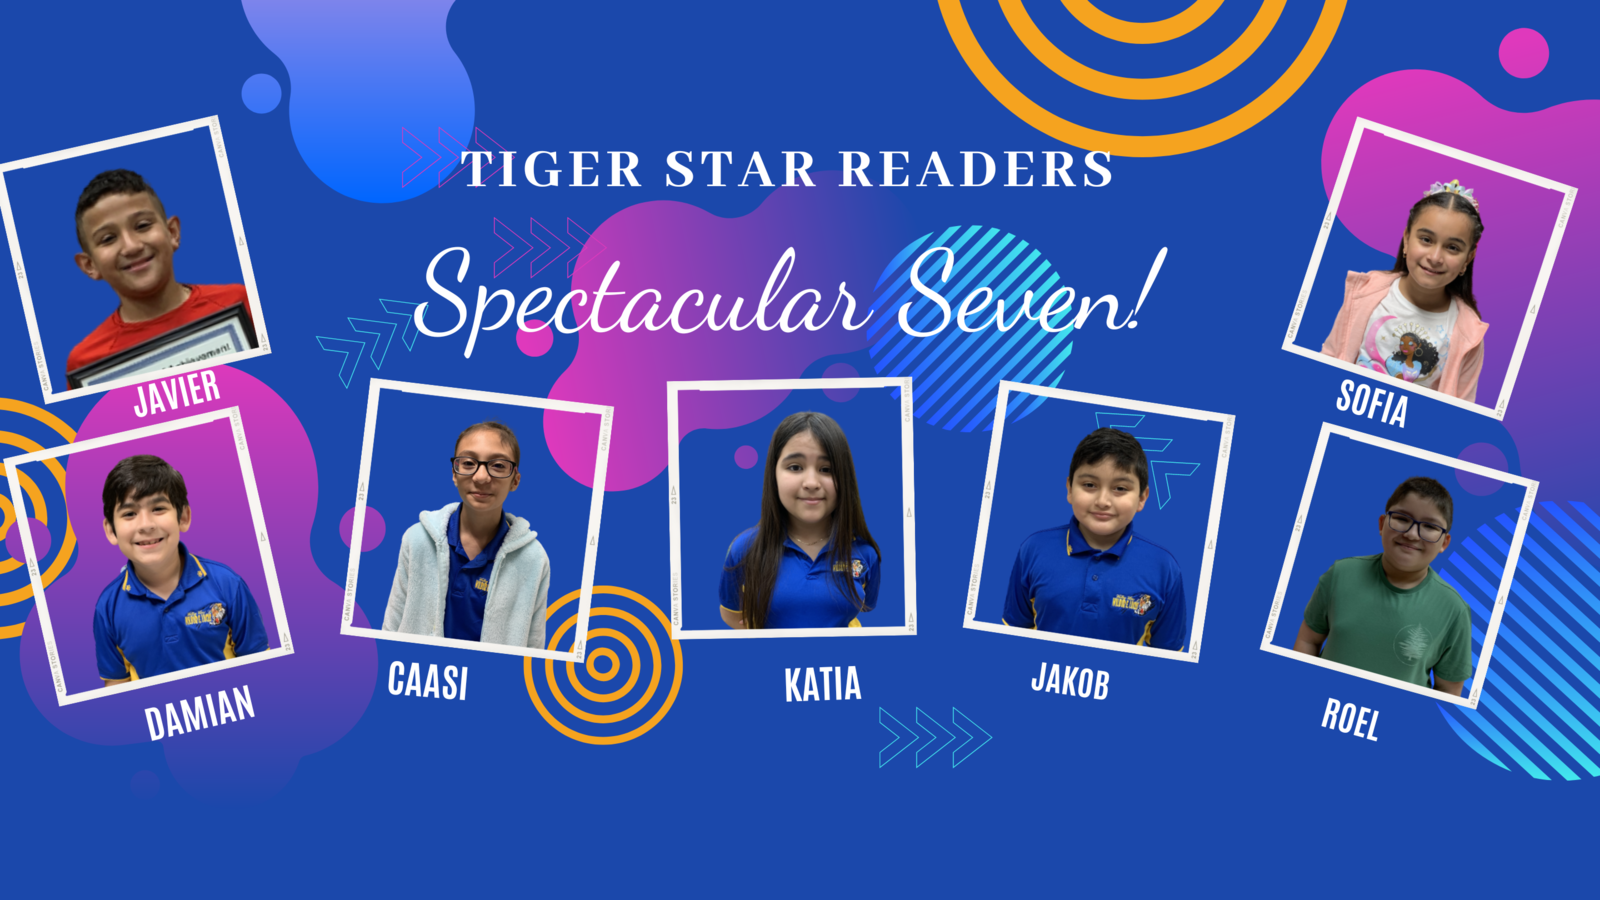 Tiger Star Readers